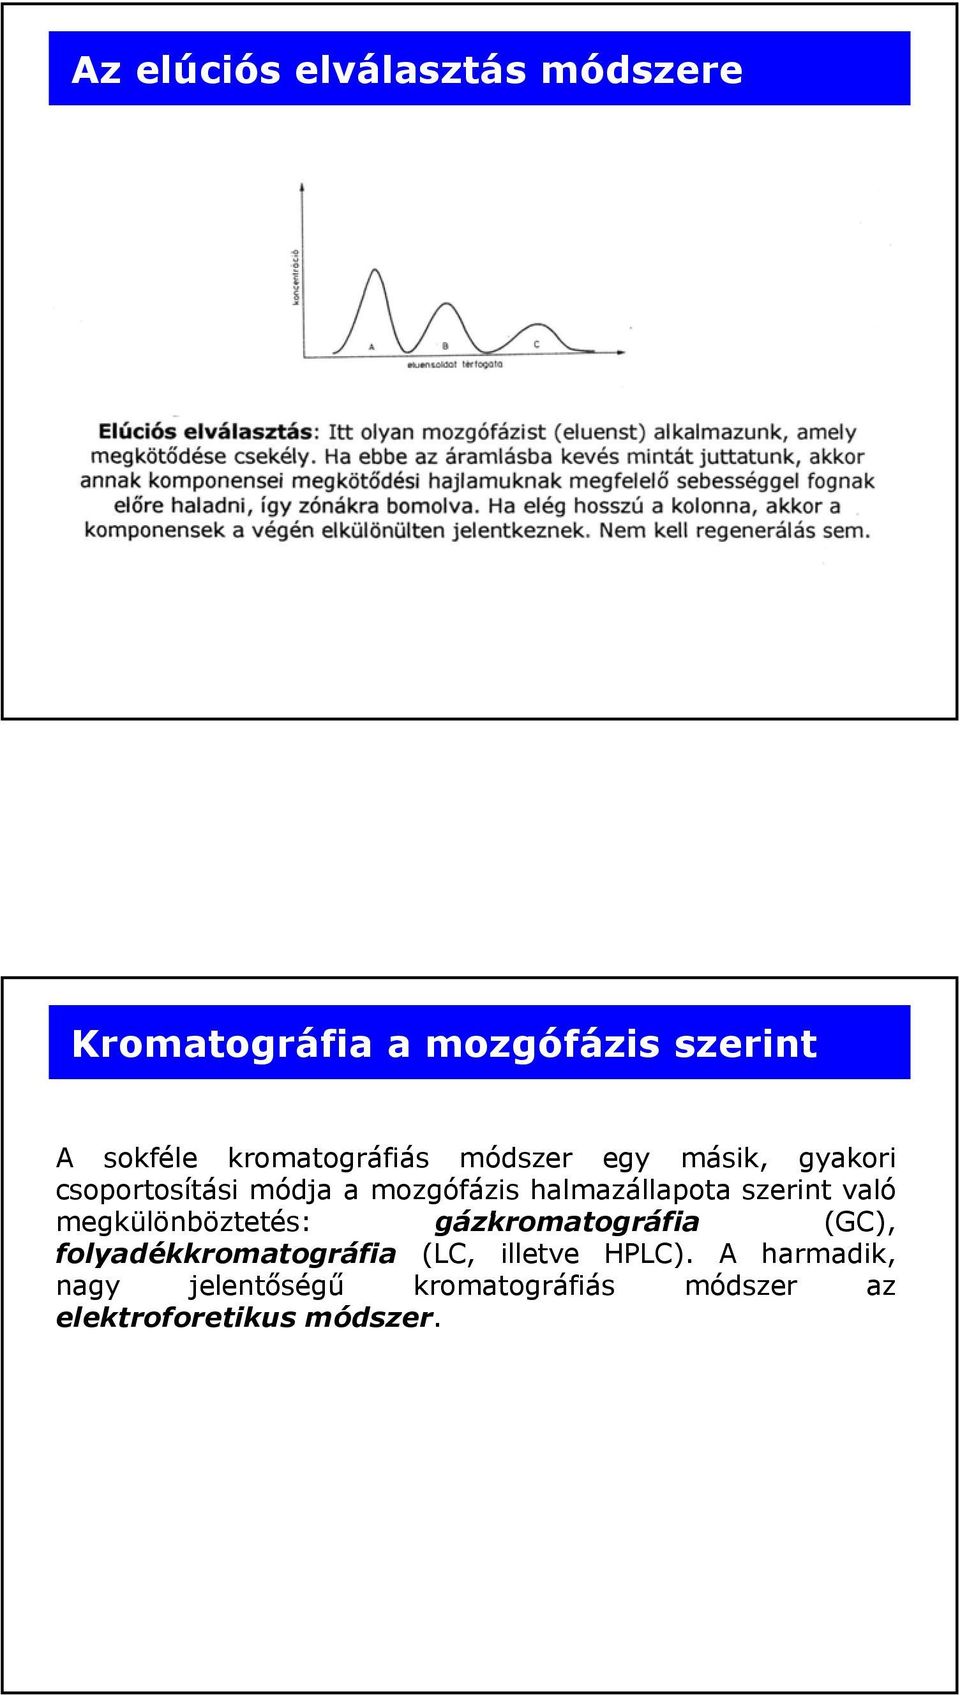 Kromatográfiás módszerek - PDF Ingyenes letöltés